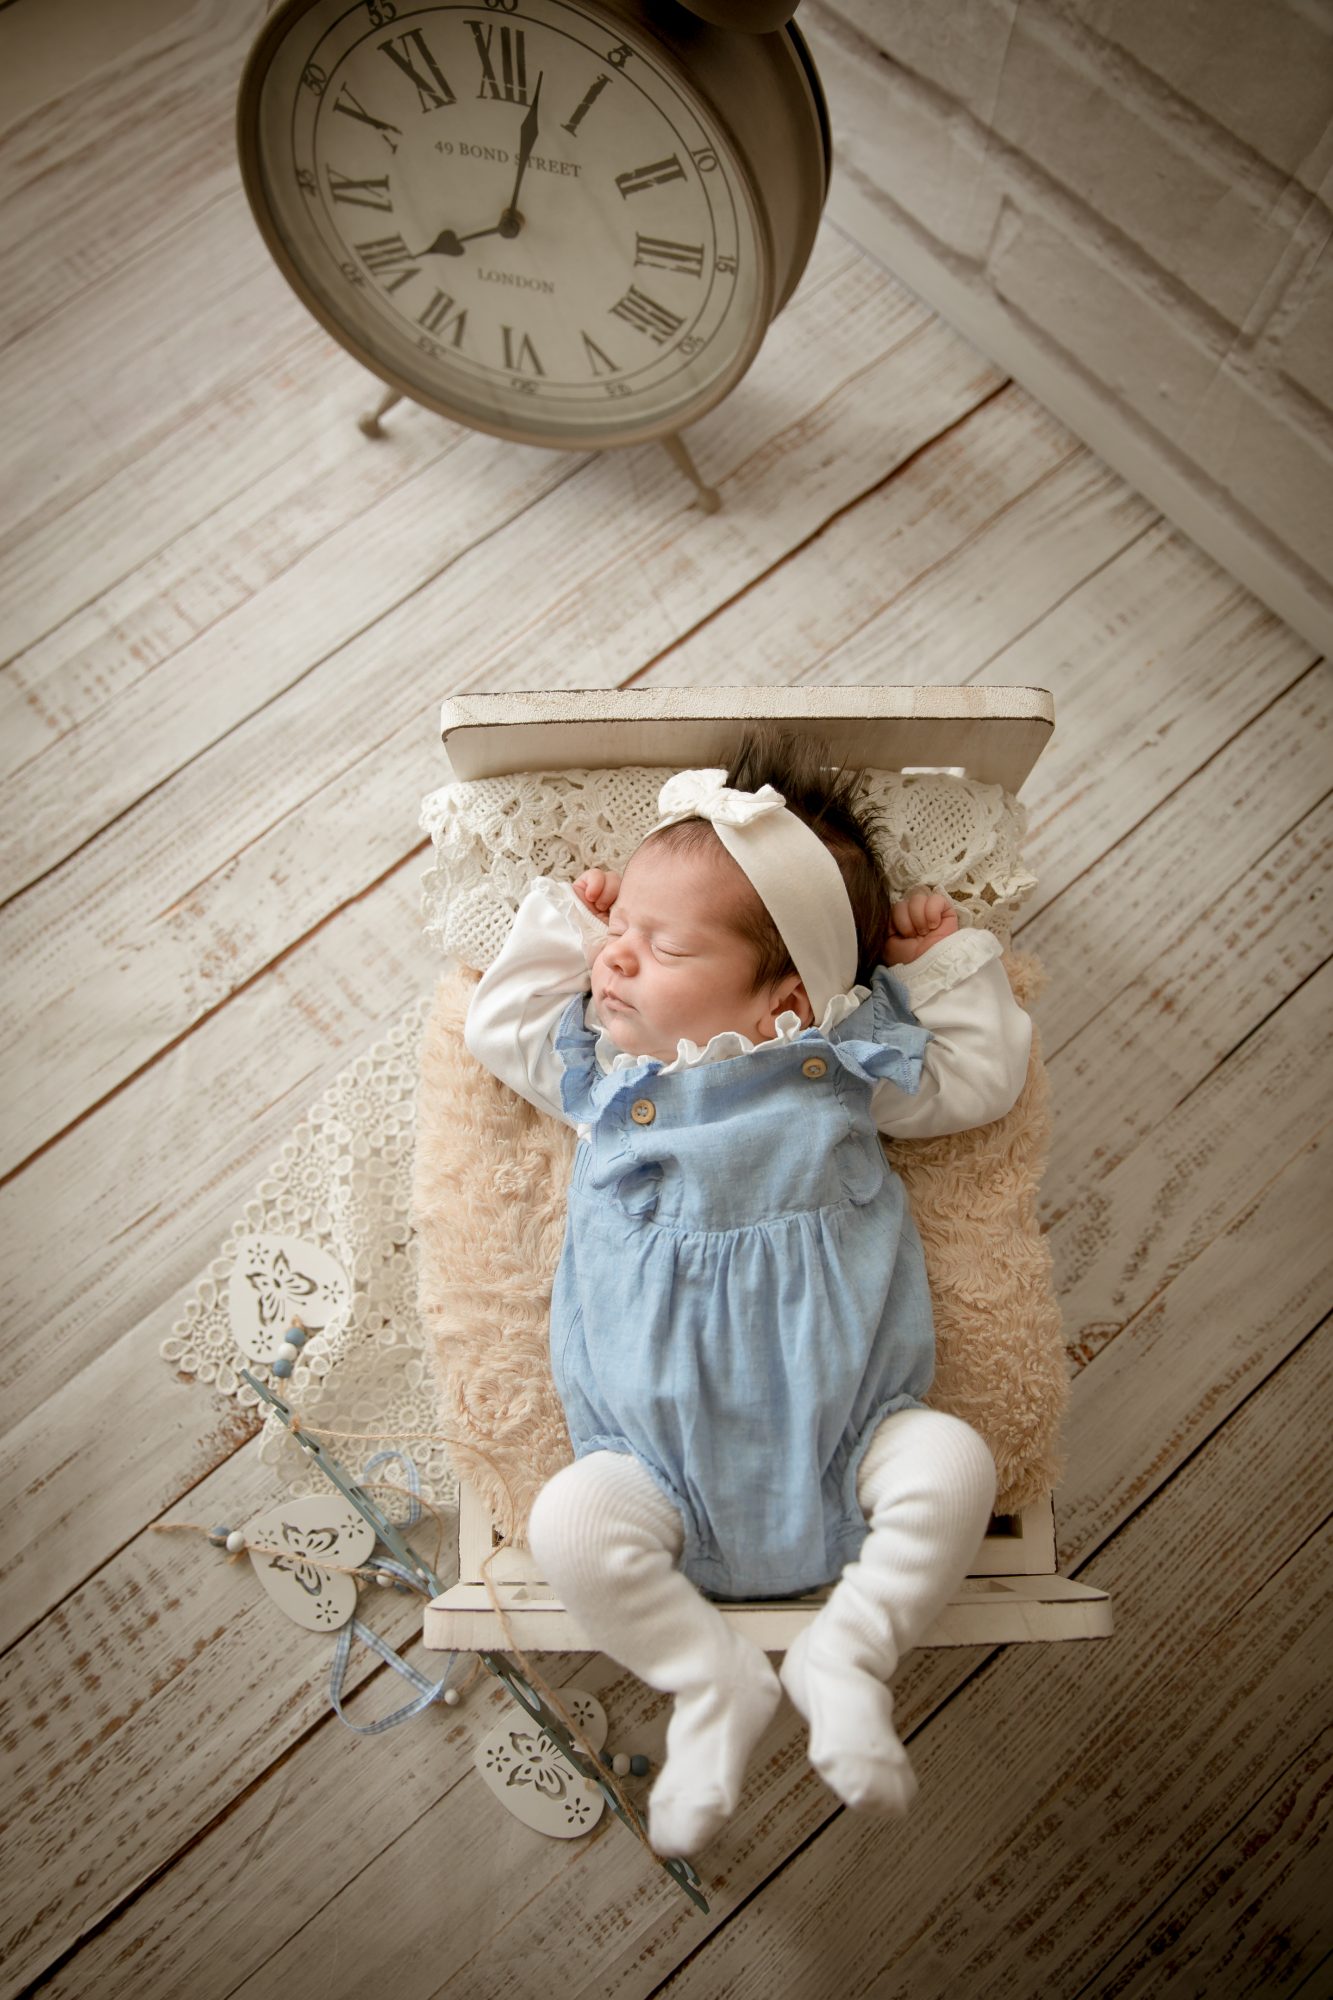 baby fotoshooting newborn fotostudio bilifotos.ch luzern baby foto zeigt wie baby sich im bettchen gestreckt hat